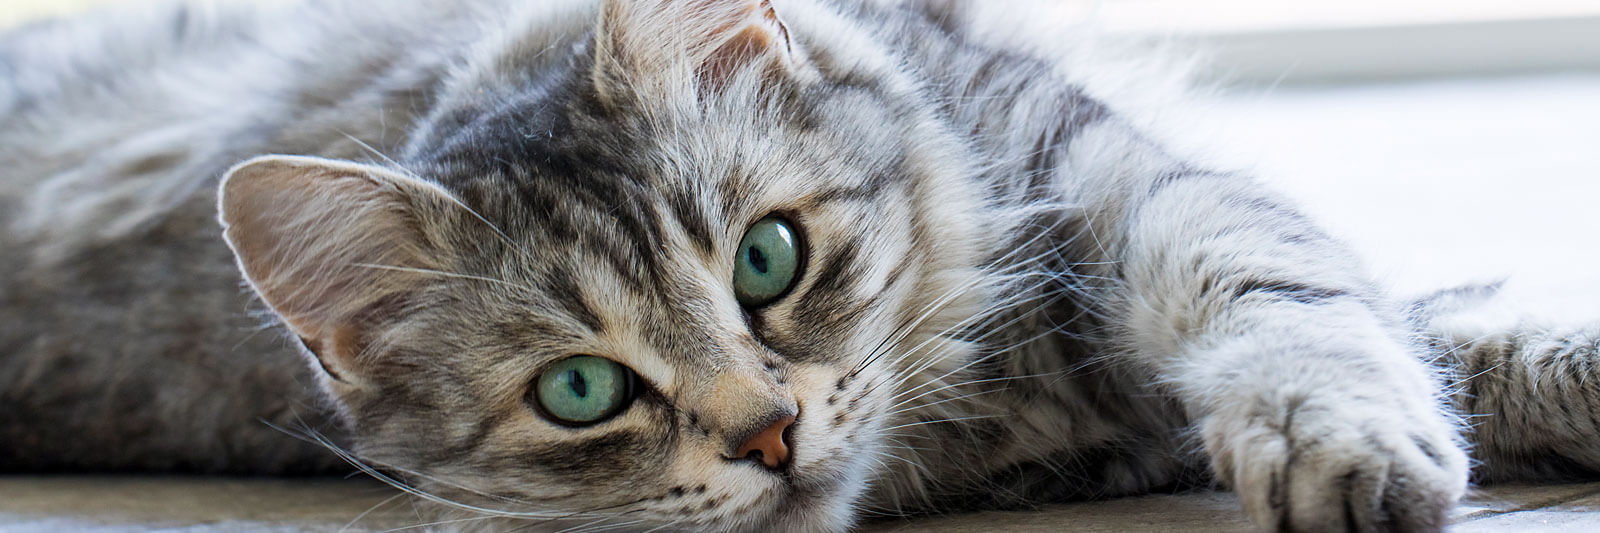 Liegende Katze mit grünen Augen